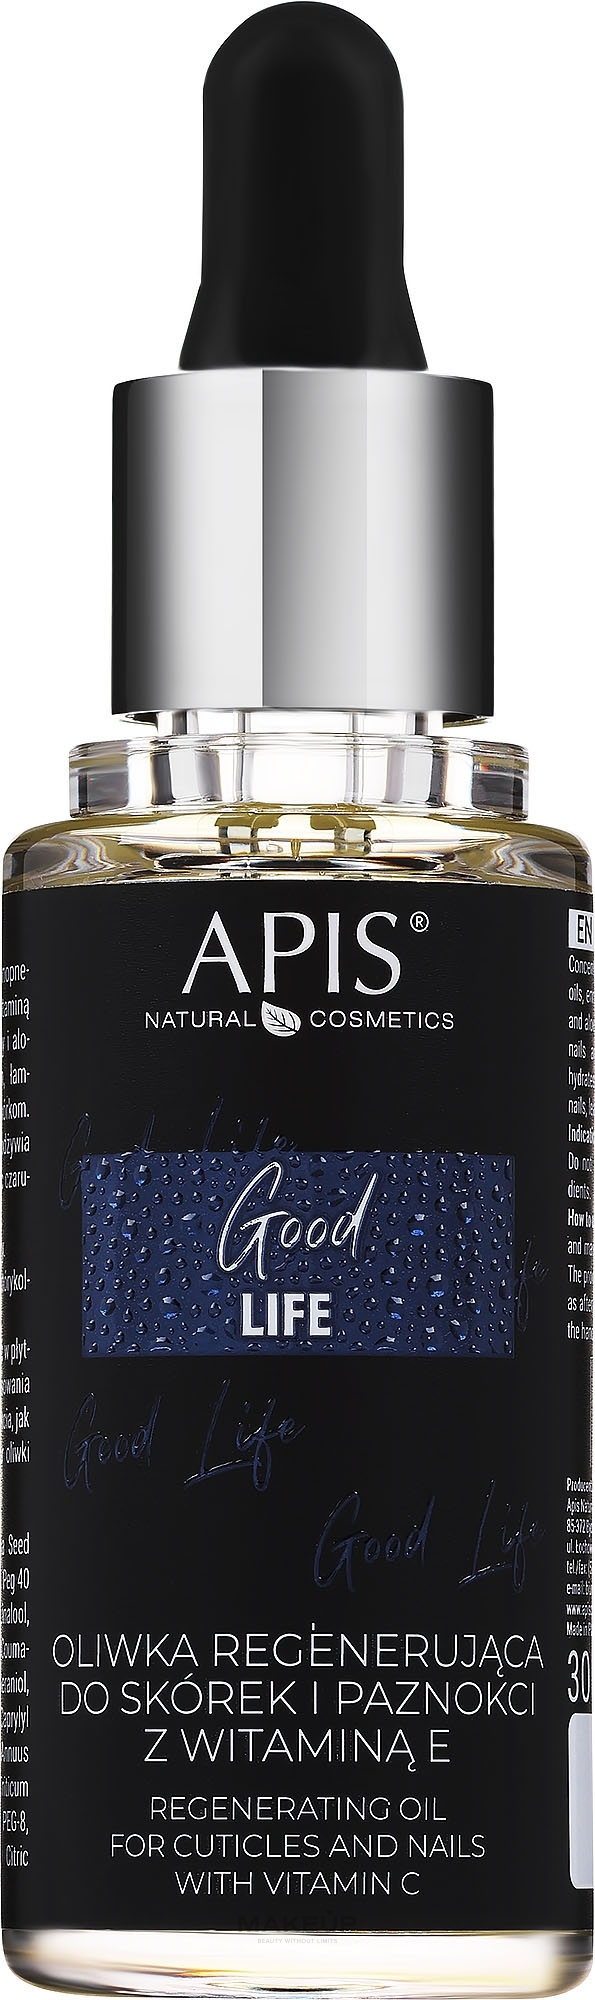 Regenerujący olejek do skórek i paznokci z witaminą E - APIS Professional Good Life Regenerating Olive Oil  — Zdjęcie 30 ml